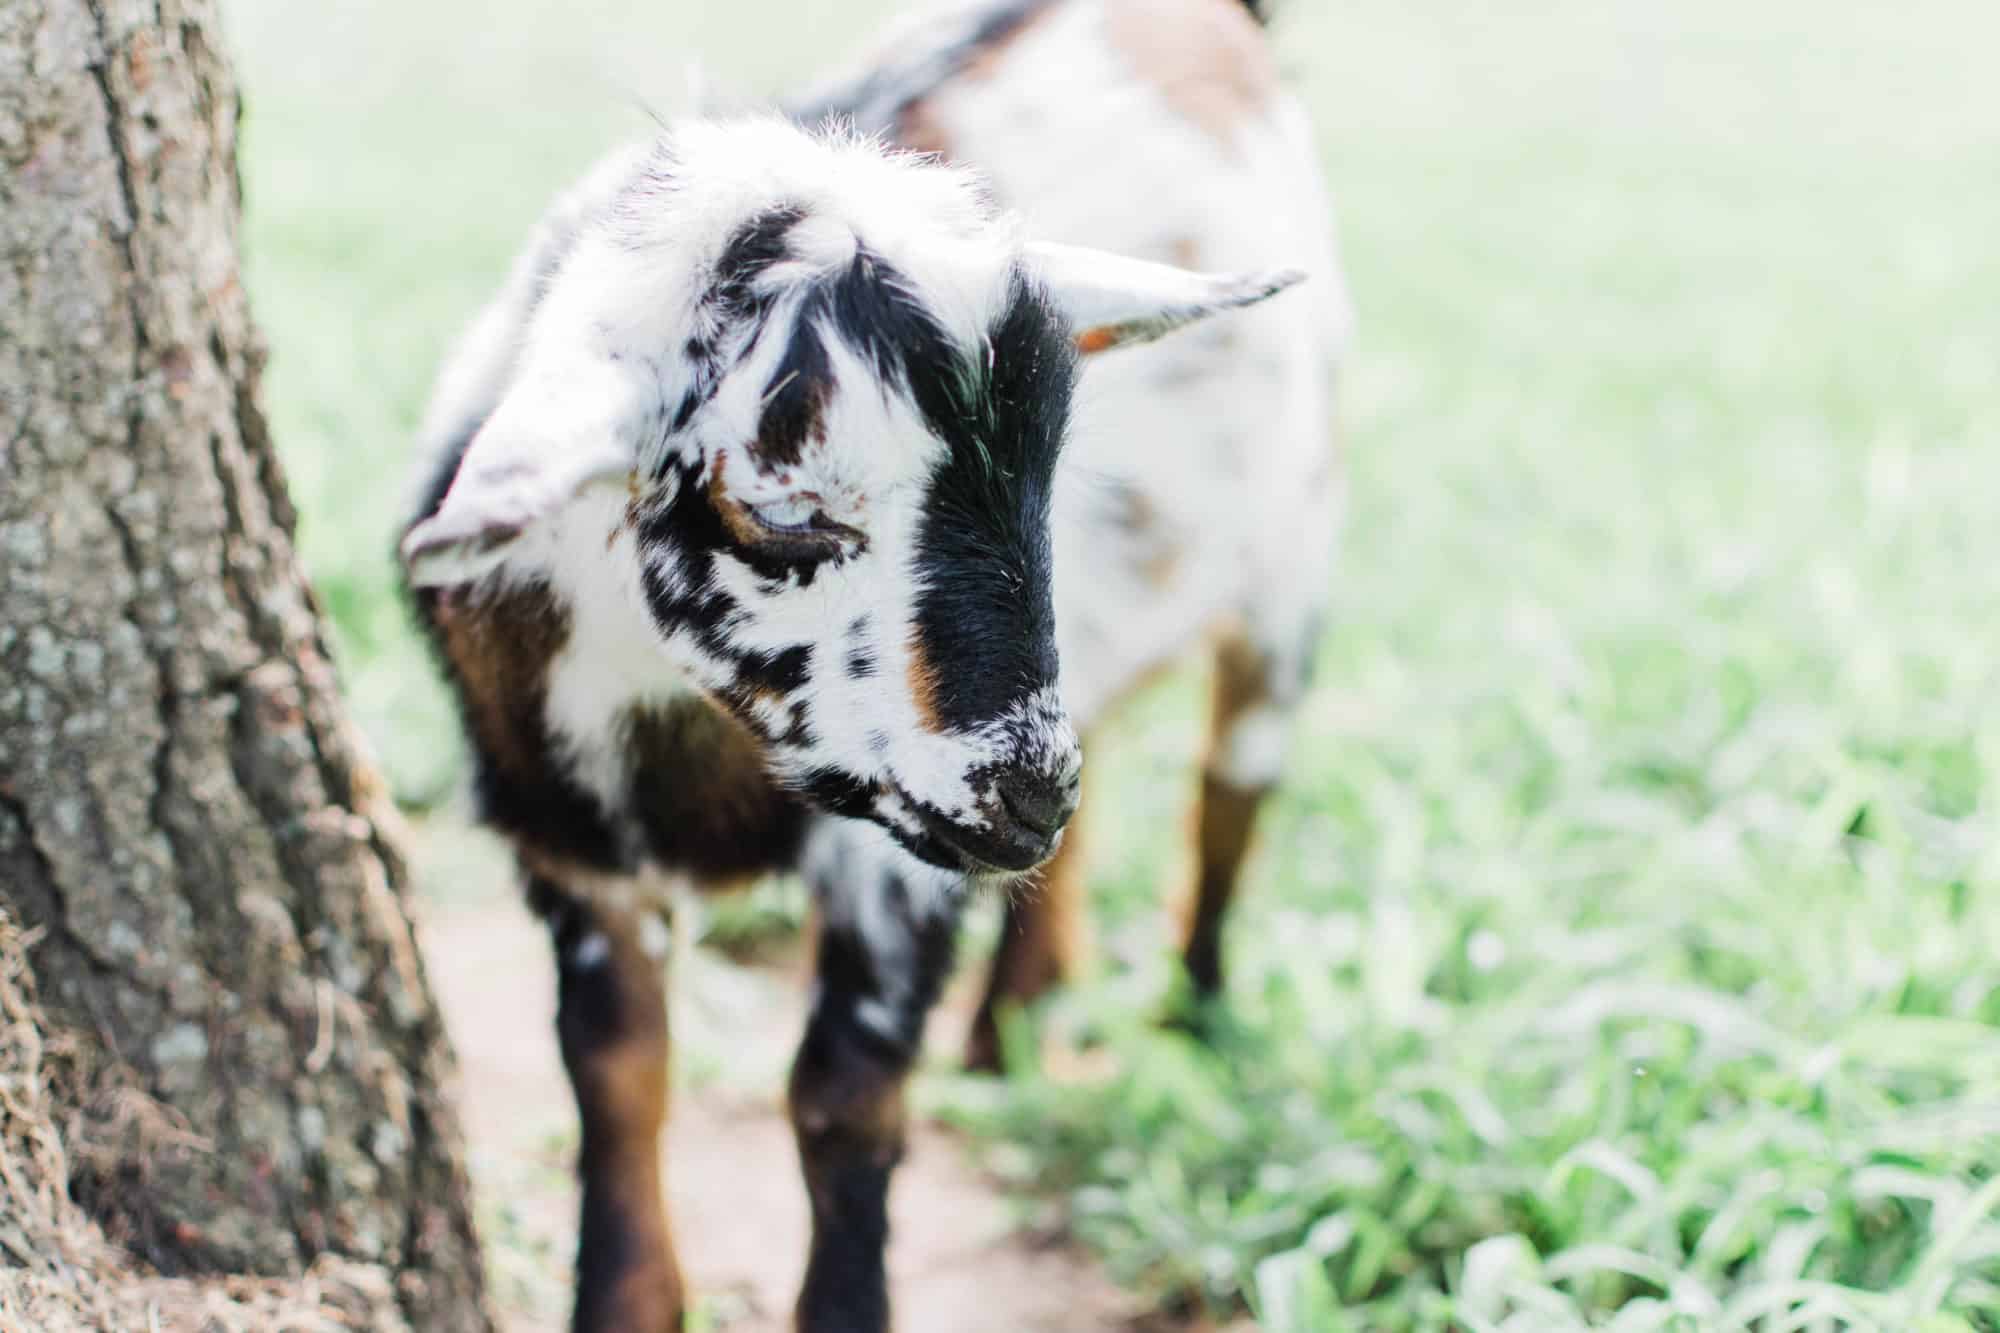 Frenchie Farm Frenchie Farm beginner tips for raising goats